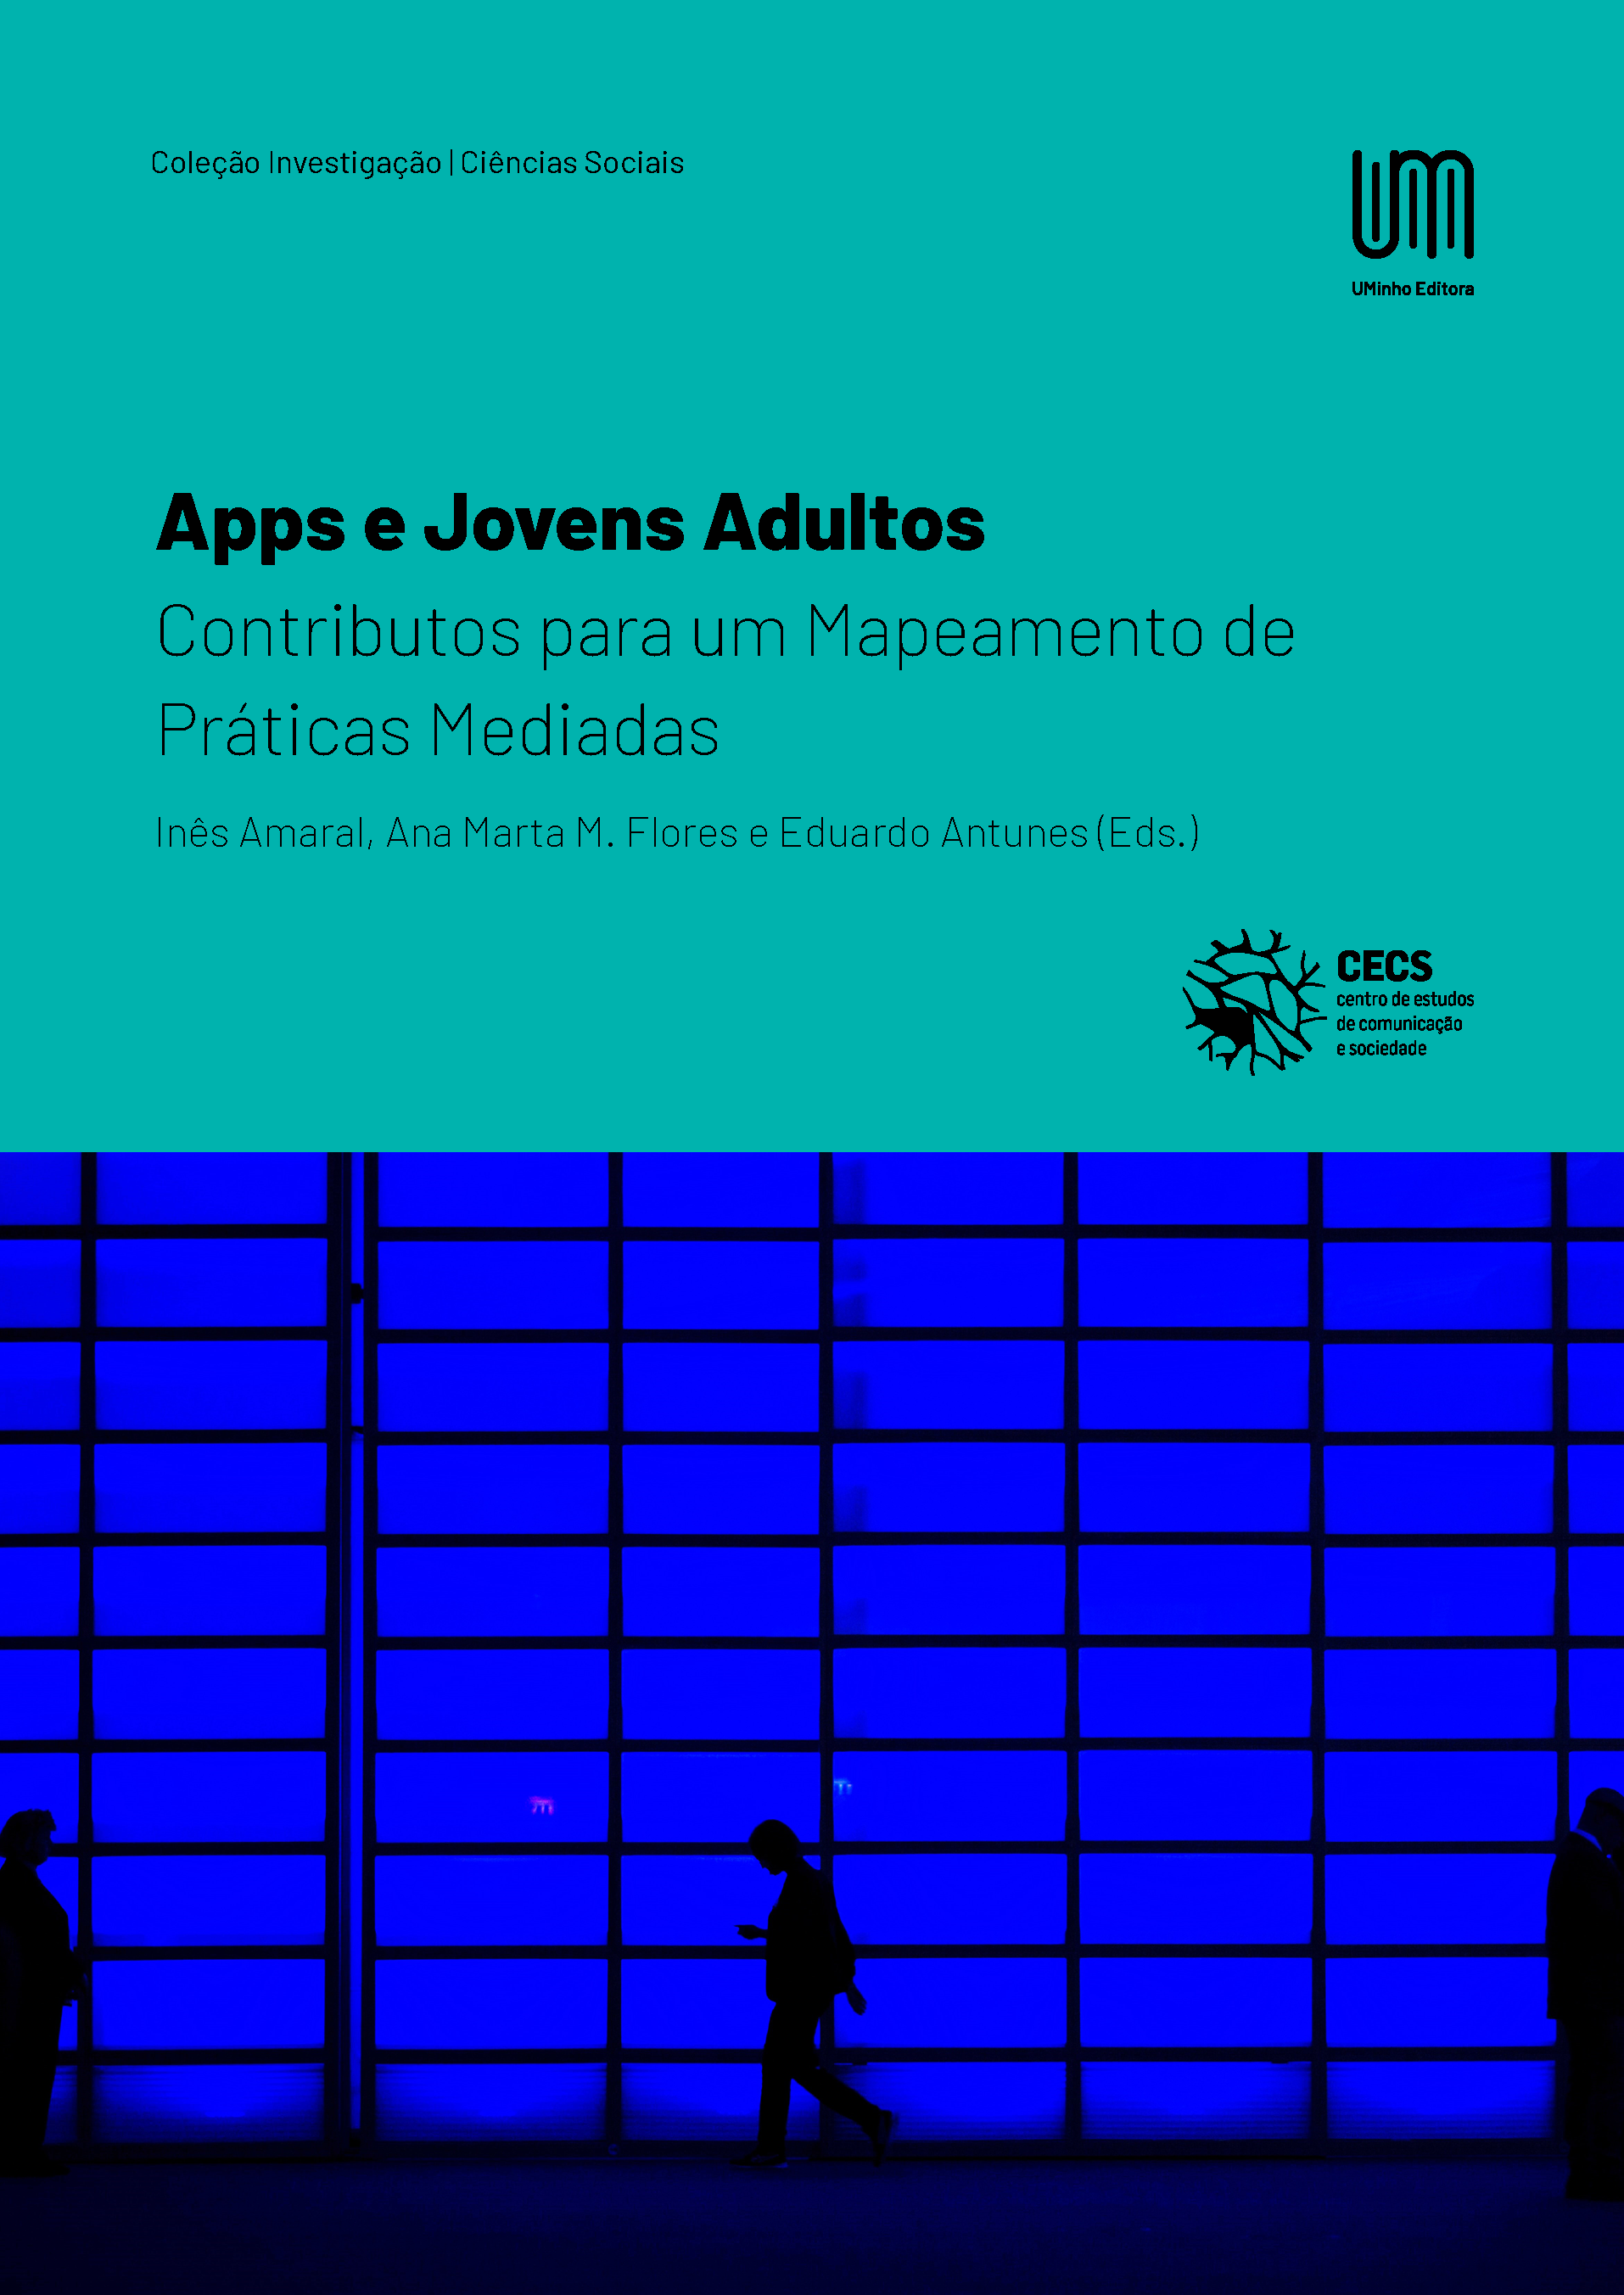 Apps e Jovens Adultos: Contributos para um Mapeamento de Práticas Mediadas - UMinho Editora